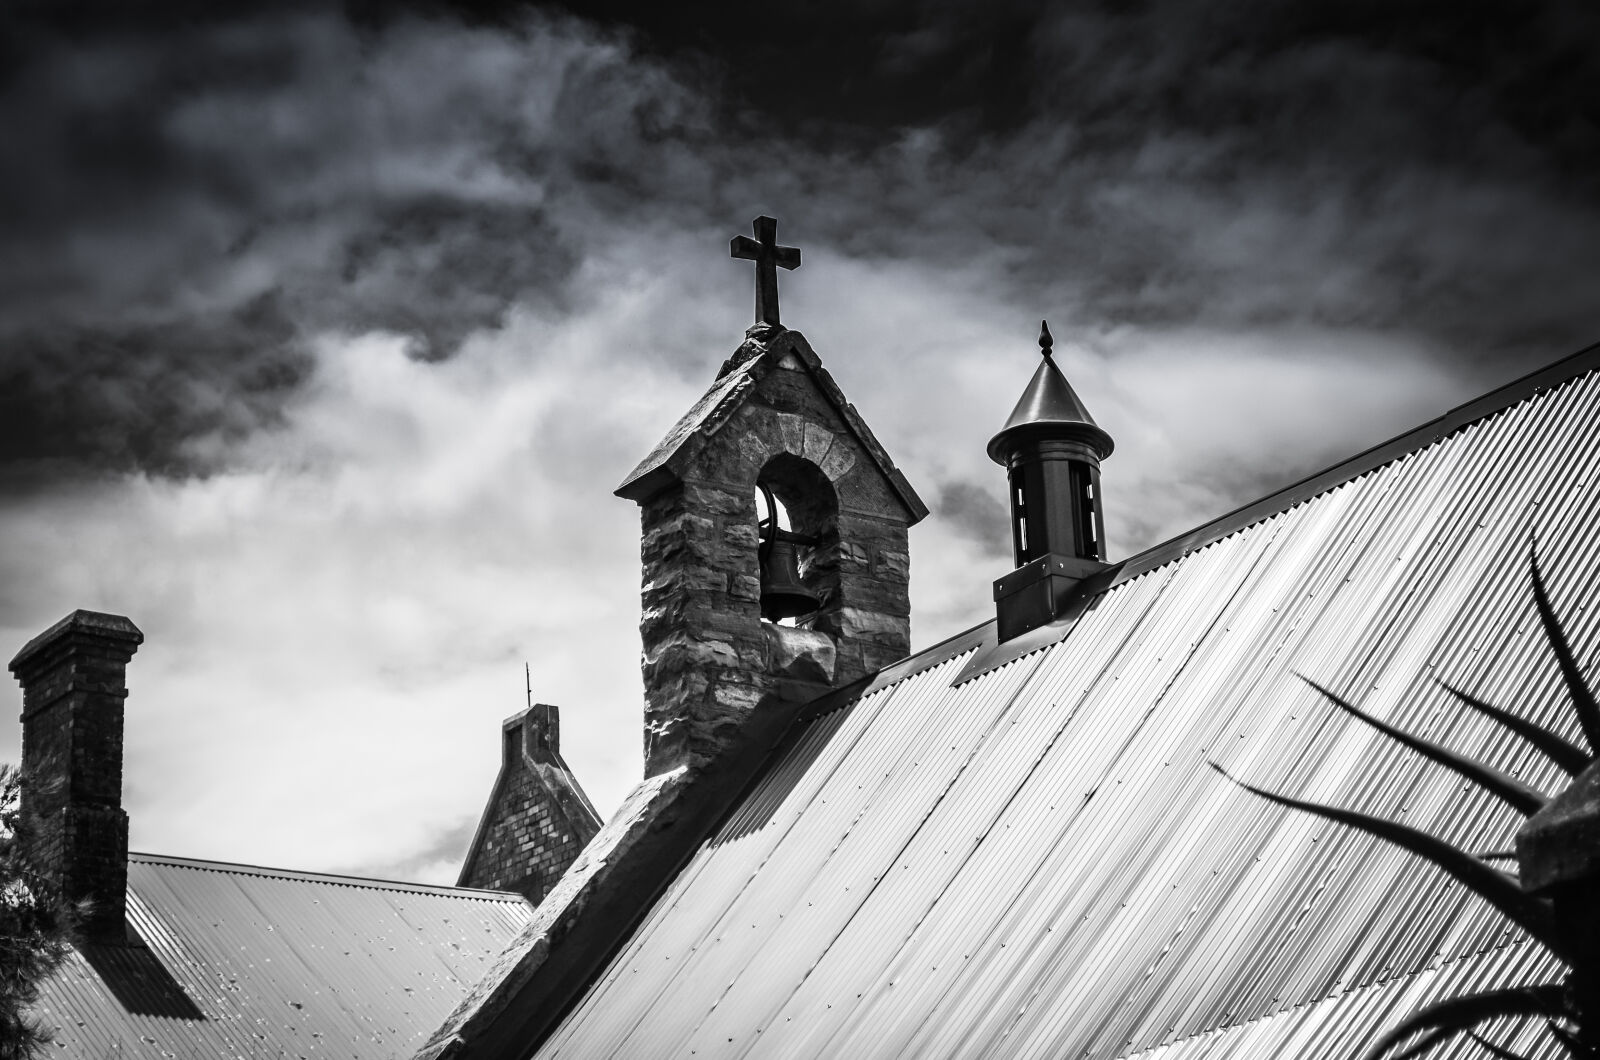 Nikon D5100 sample photo. Gloomy church building photography